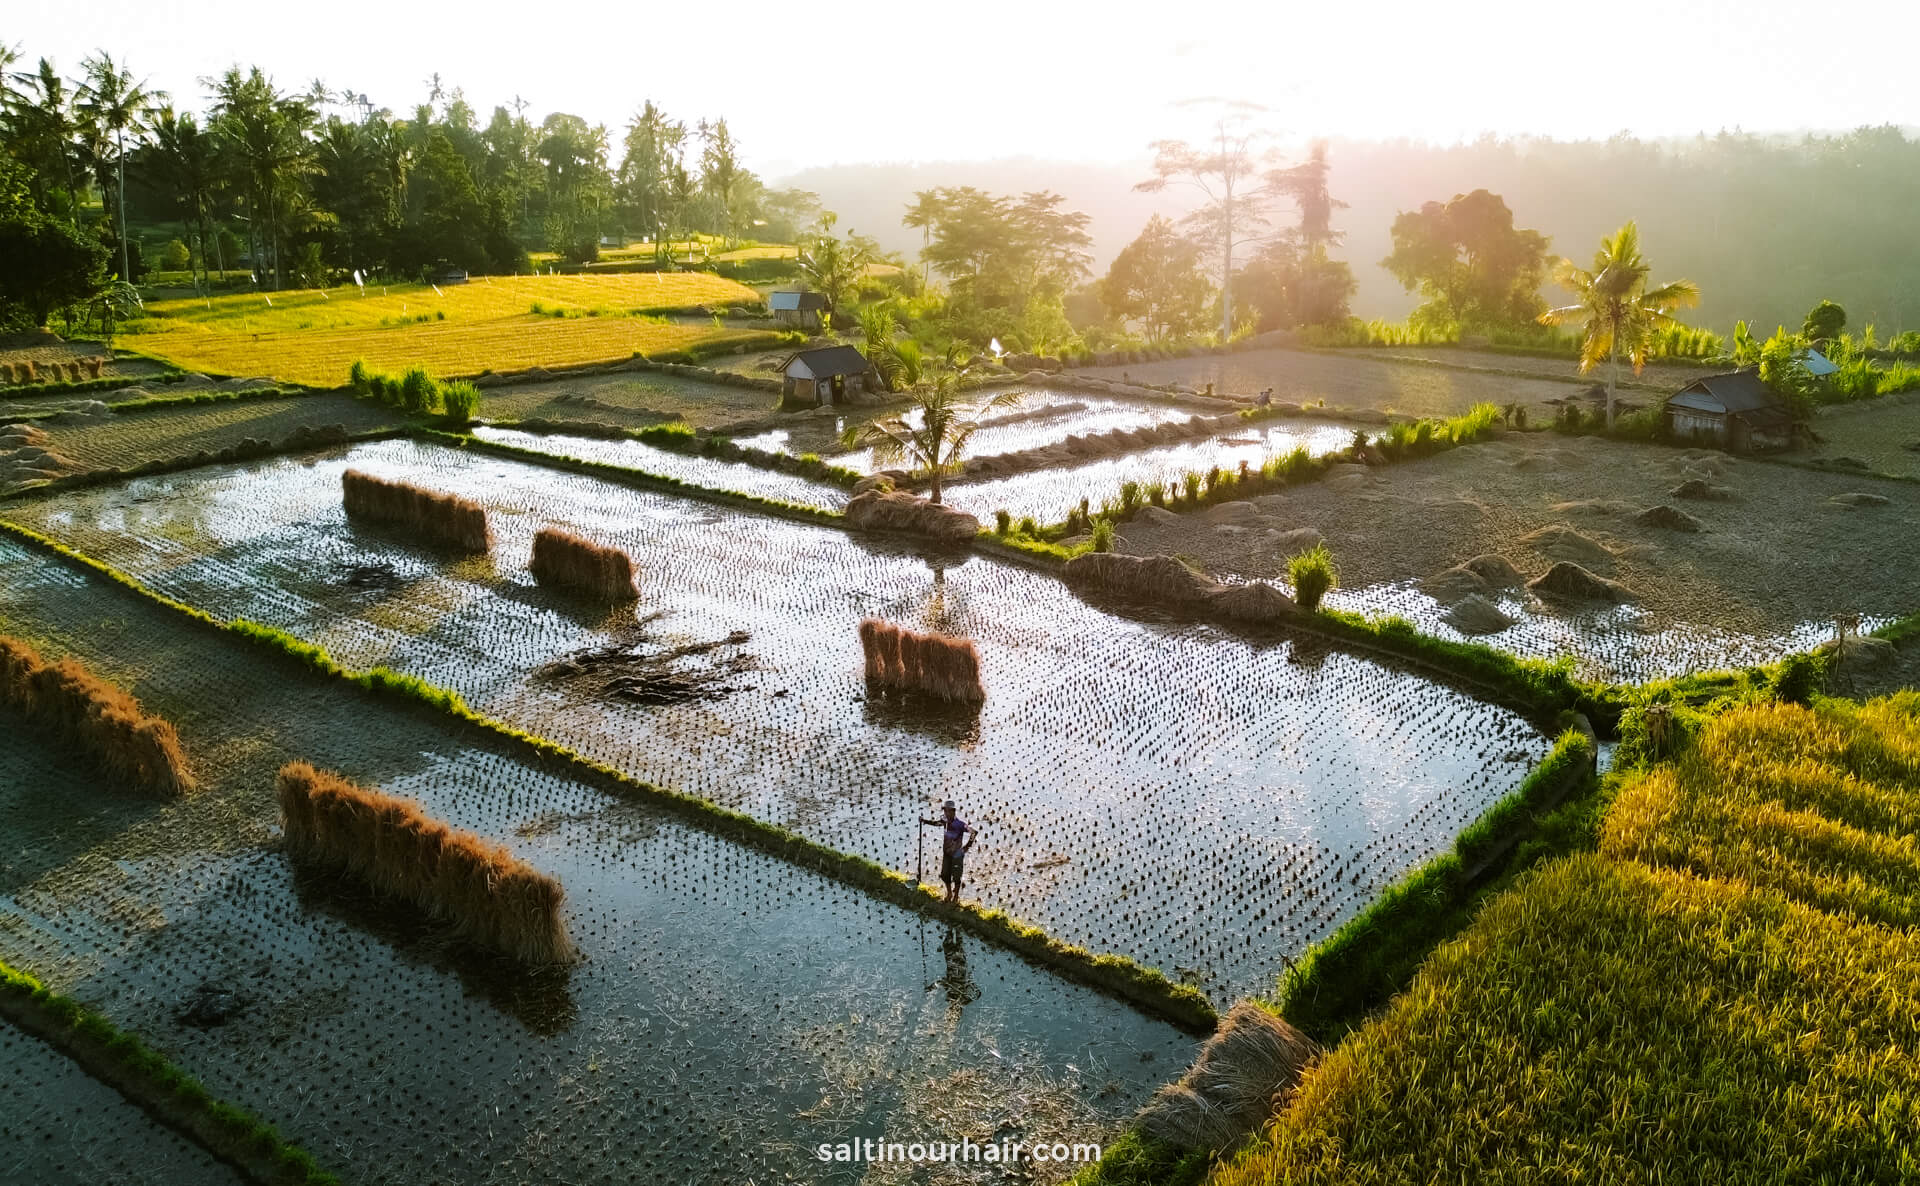 sidemen bali rice terraces drone